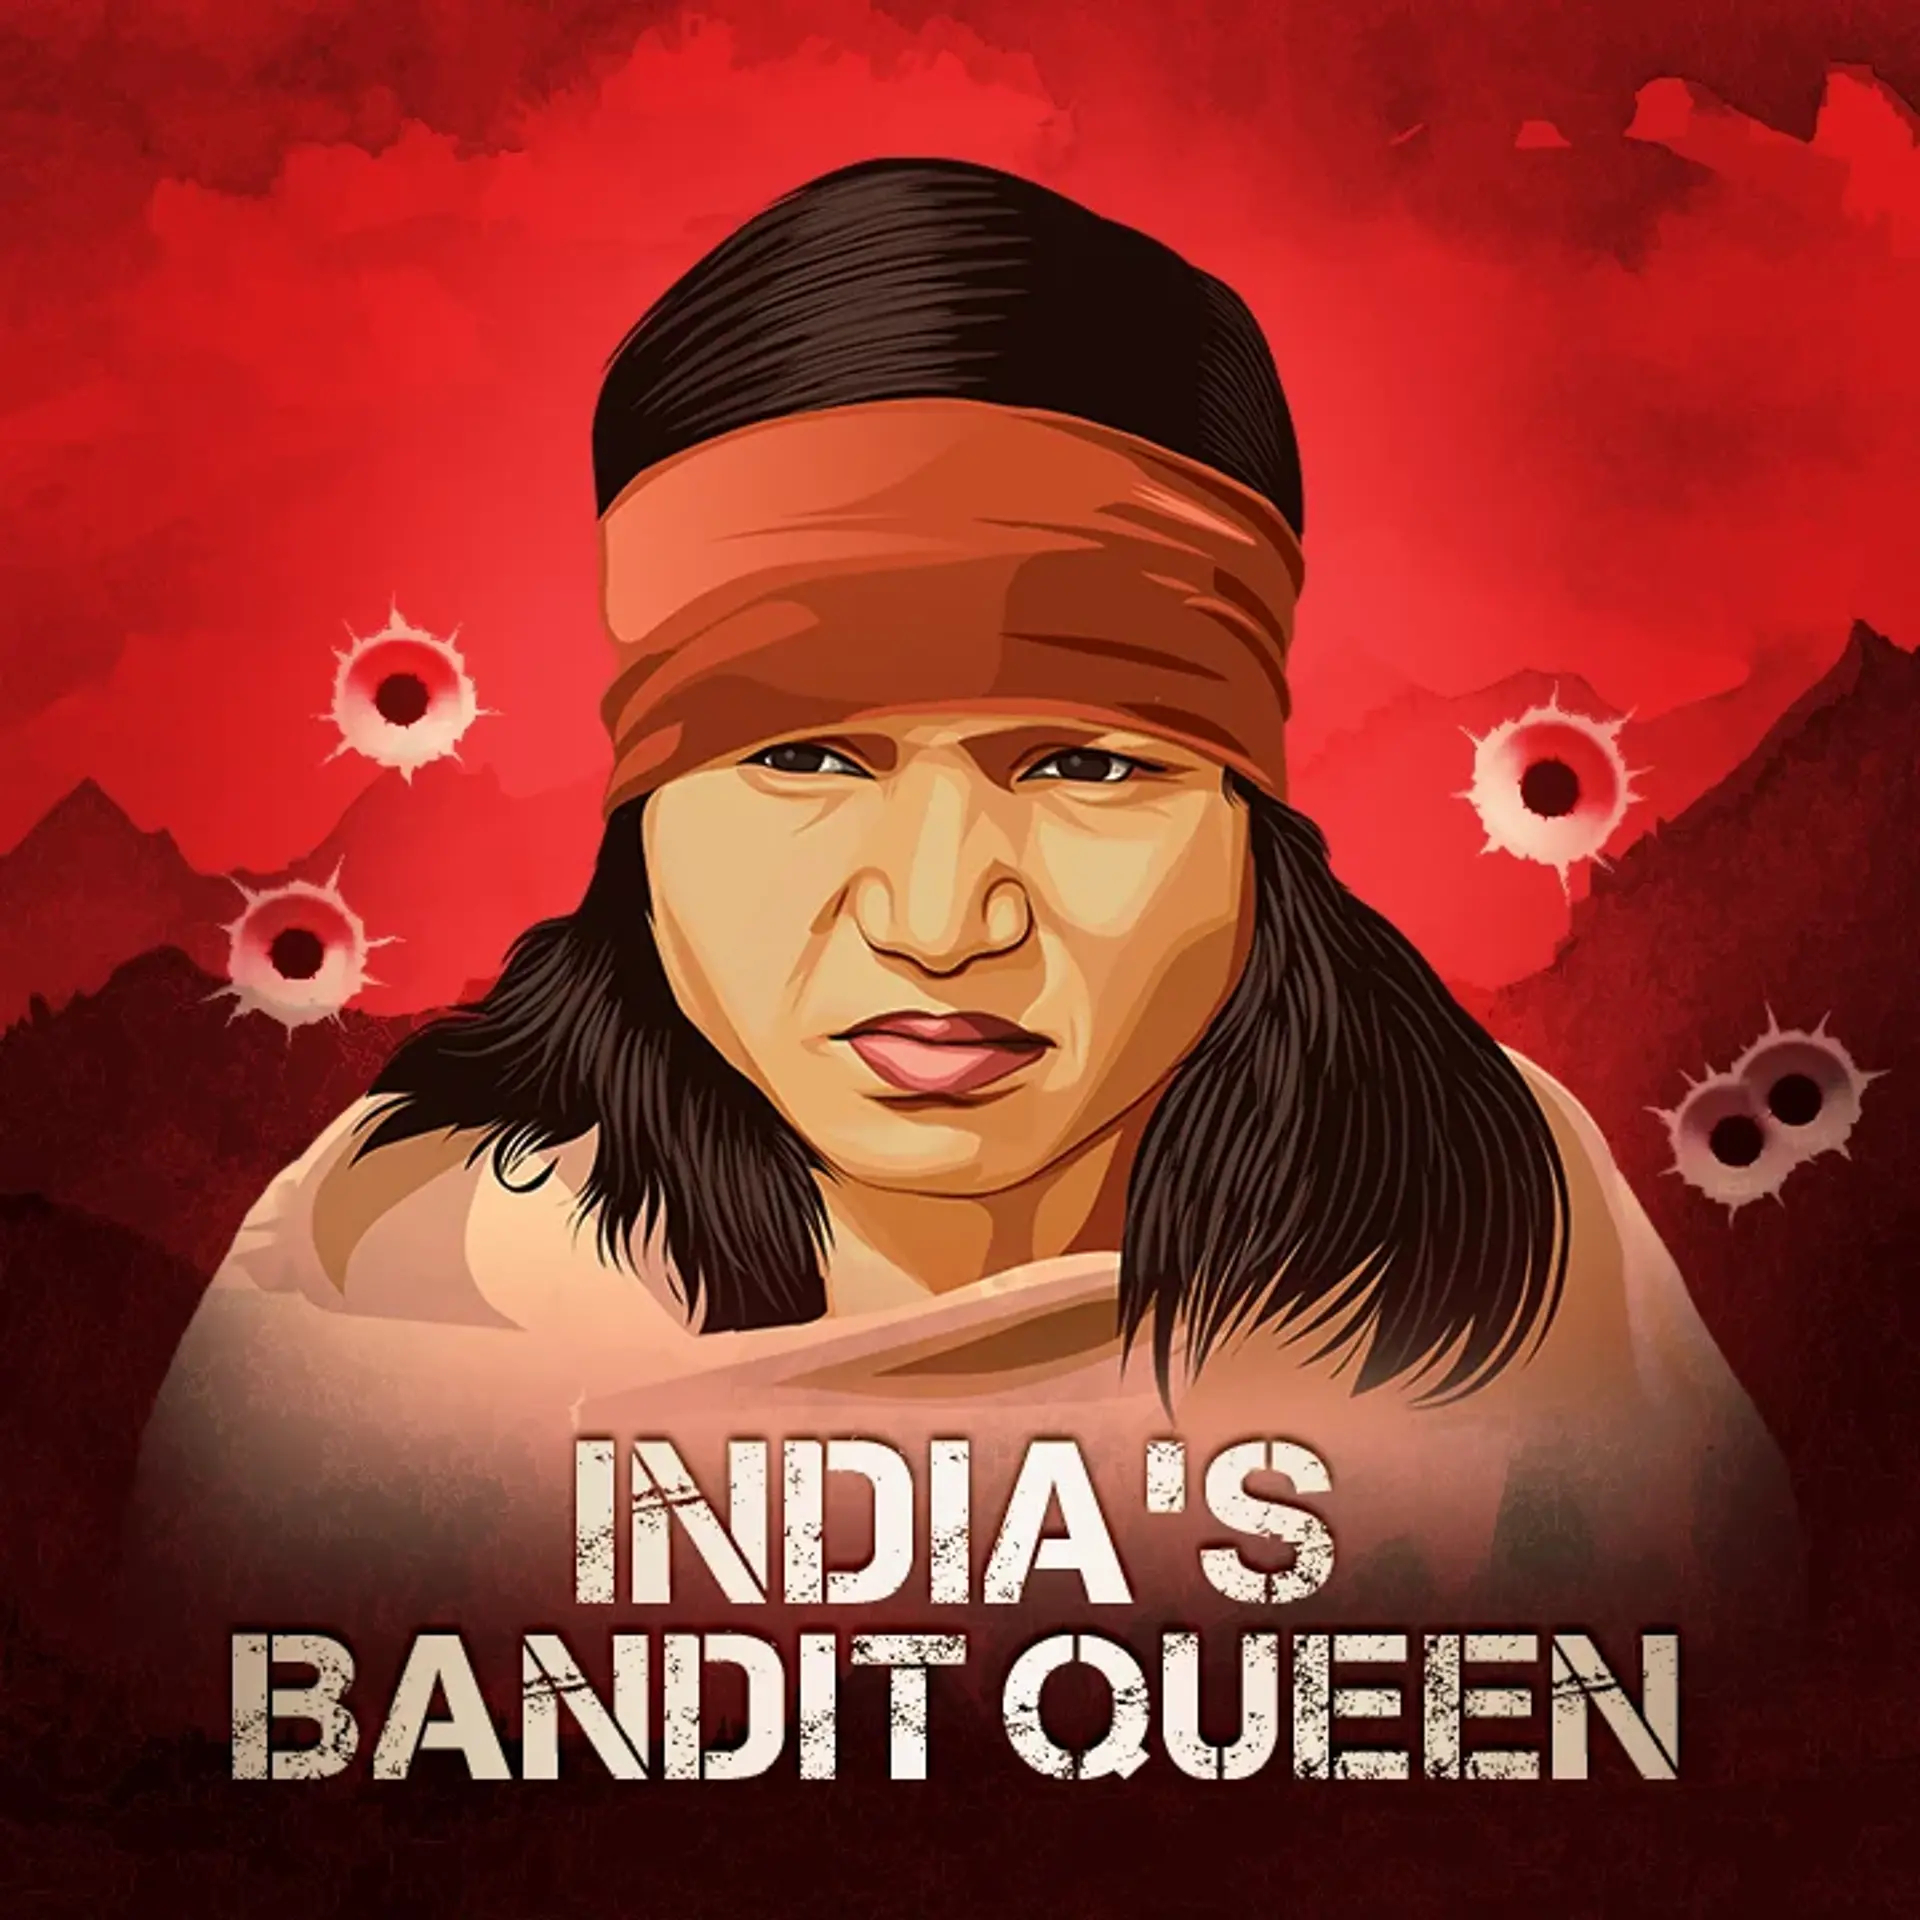 1. India's Bandit Queen